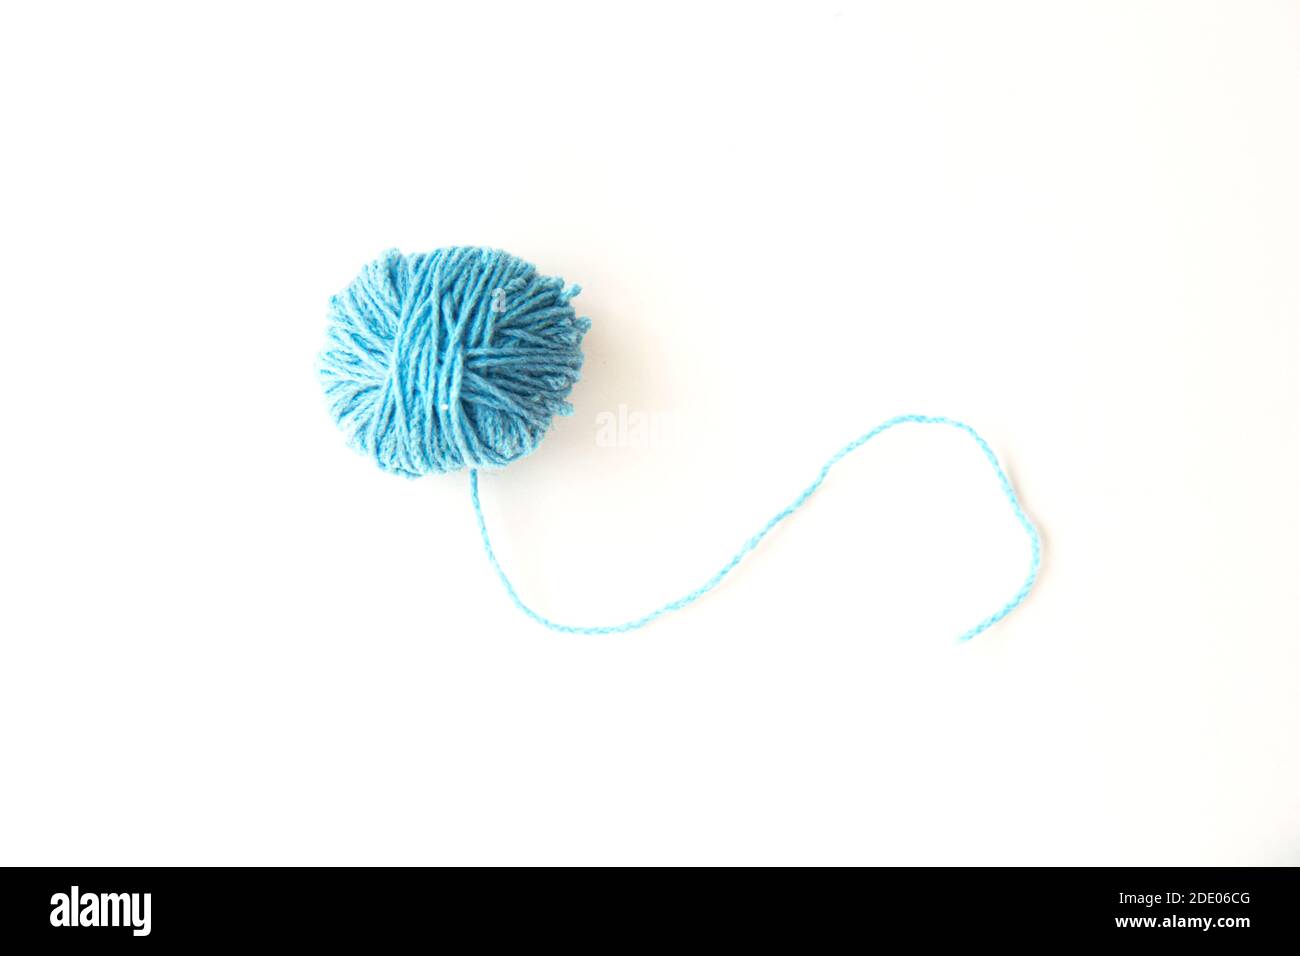 Sfera blu di filo di lana su uno sfondo chiaro con spazio di copia Foto Stock